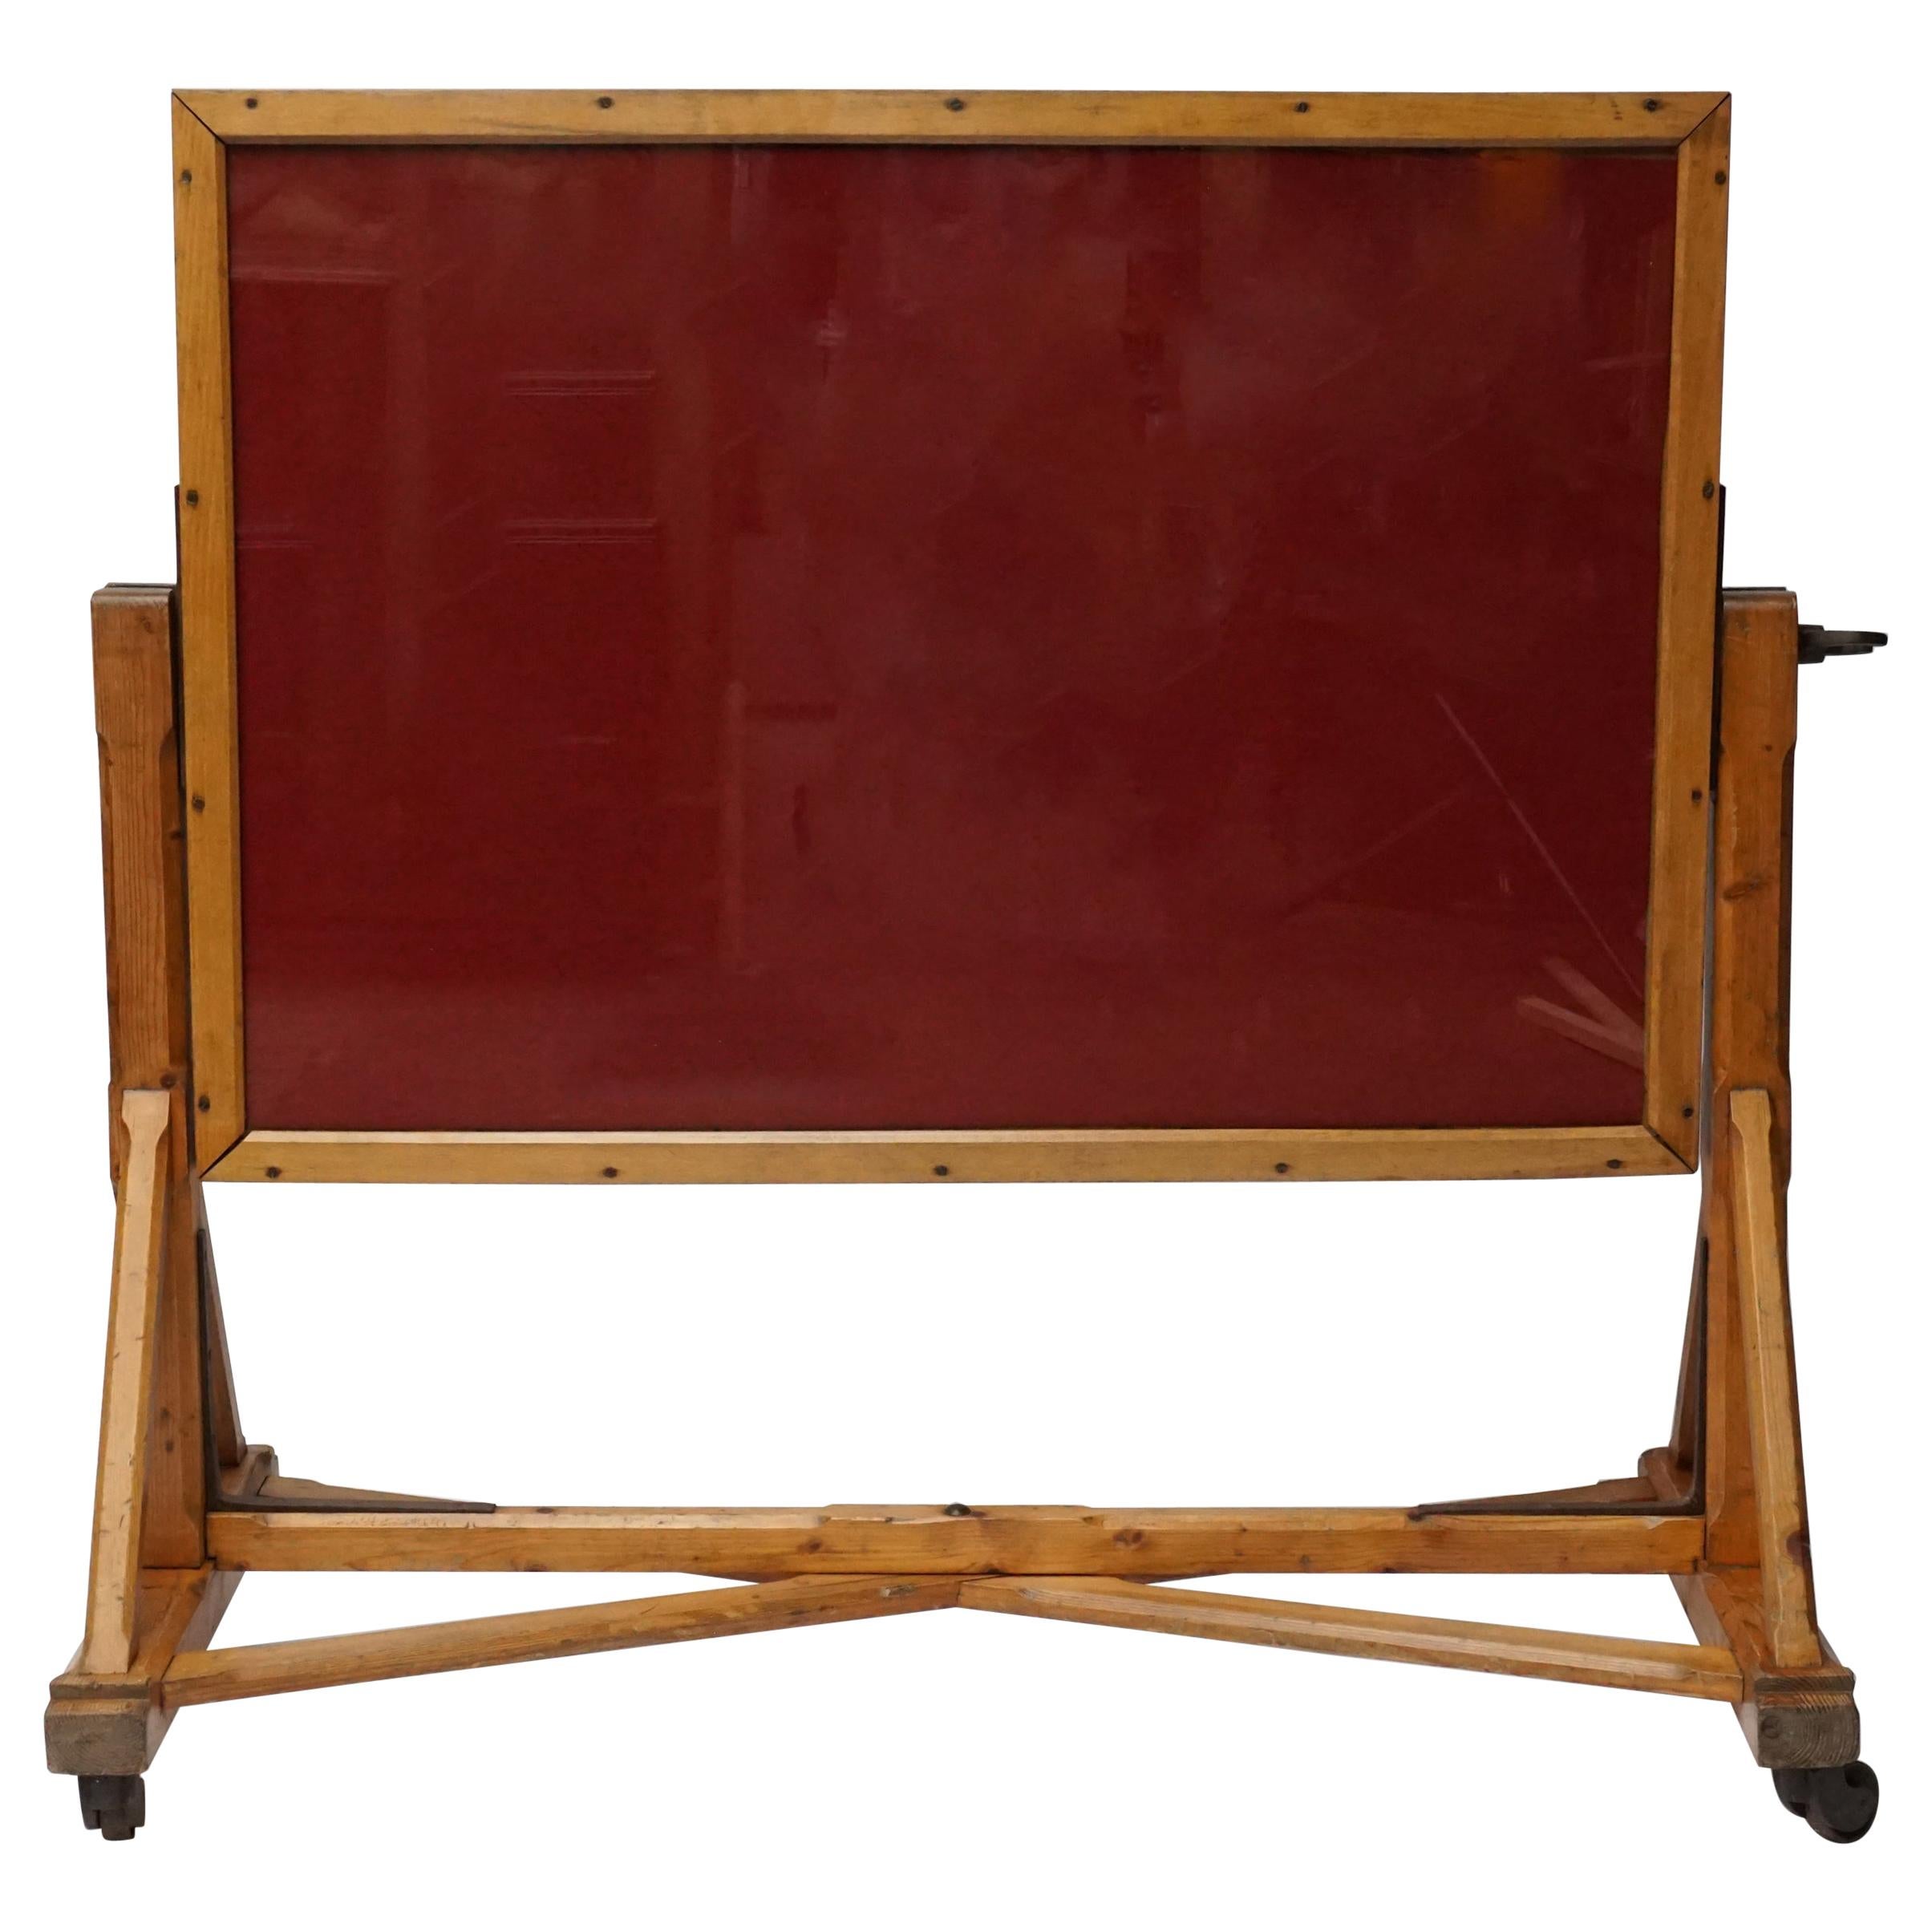 Grand cadre inclinable pour photographies en bois de pin du 19ème siècle, chambre sombre, imprimé négatif